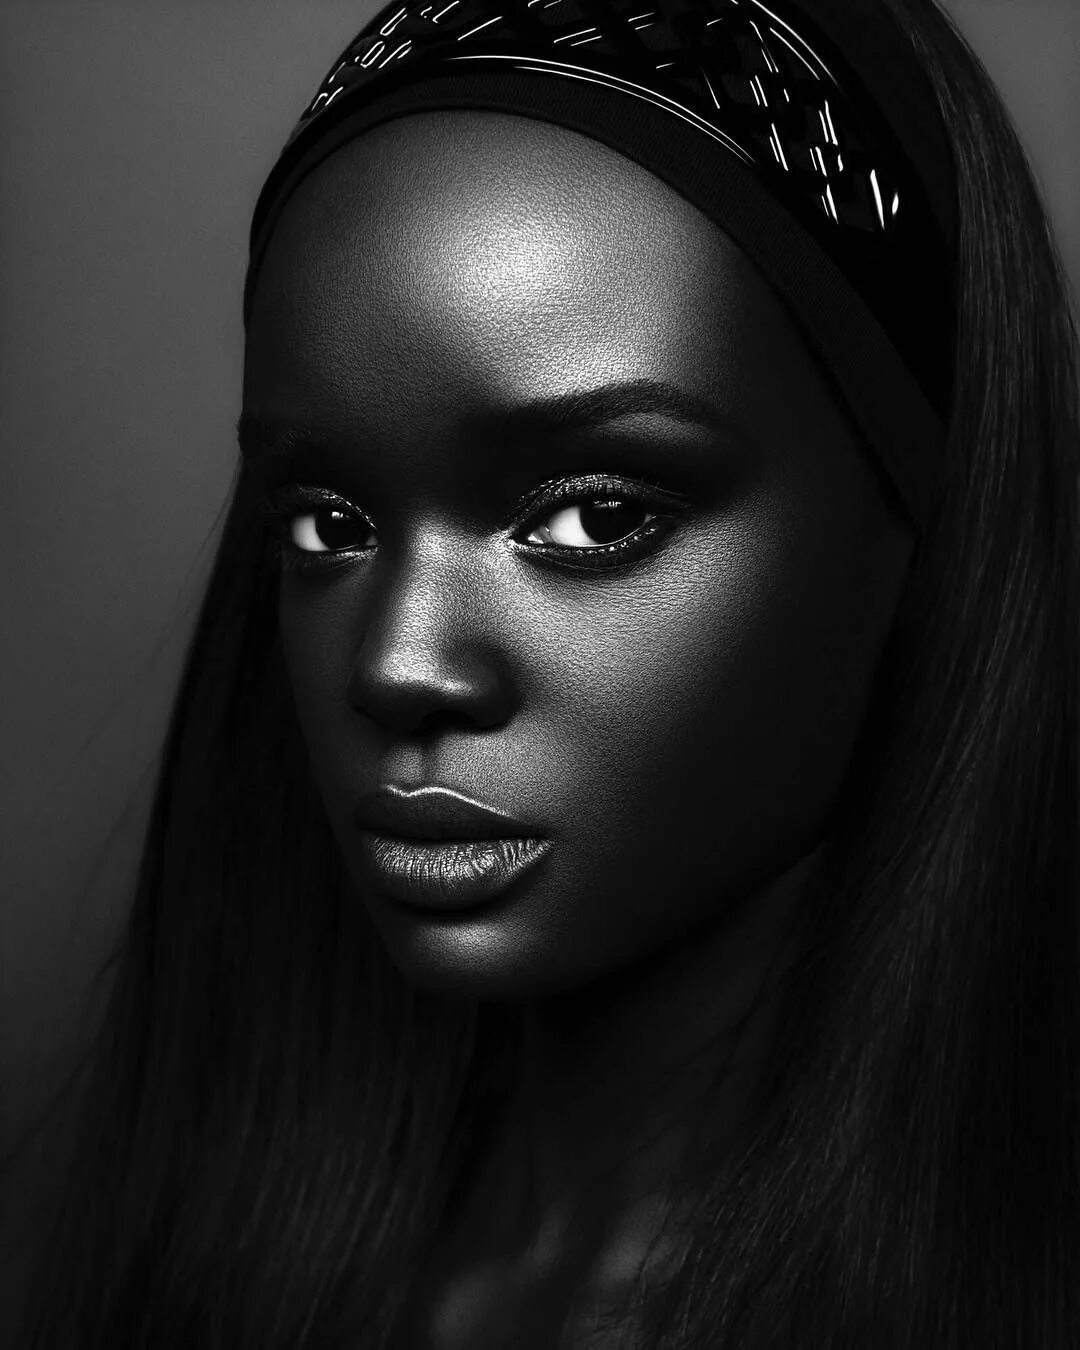 Темная негритянка. Модель даки тот (Duckie thot) из Южного Судана. Брук Бейли темнокожая модель. Пегги Даниэль темнокожая модель.